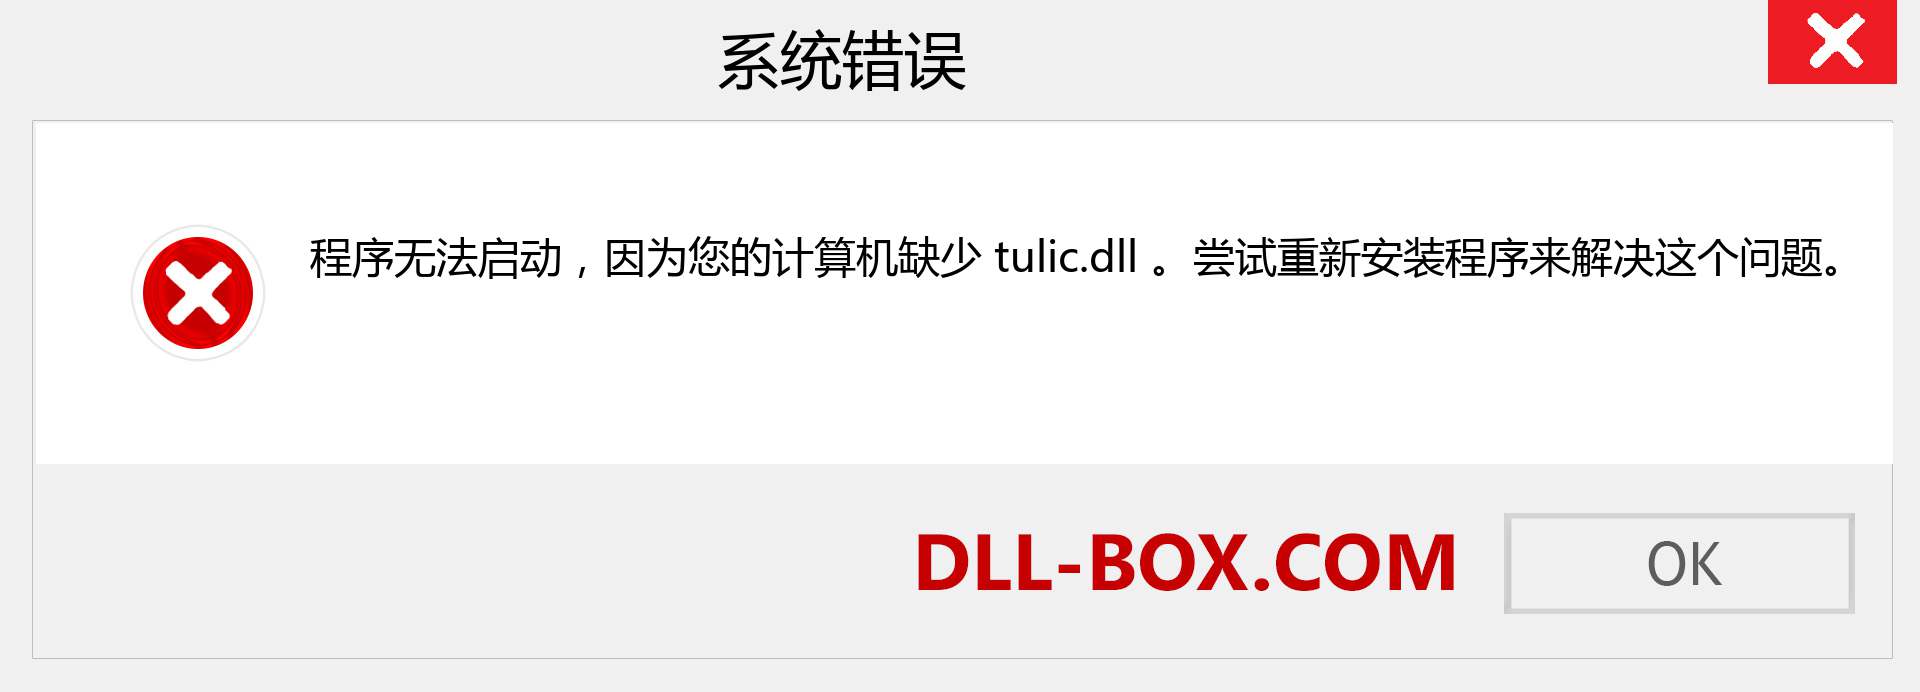 tulic.dll 文件丢失？。 适用于 Windows 7、8、10 的下载 - 修复 Windows、照片、图像上的 tulic dll 丢失错误